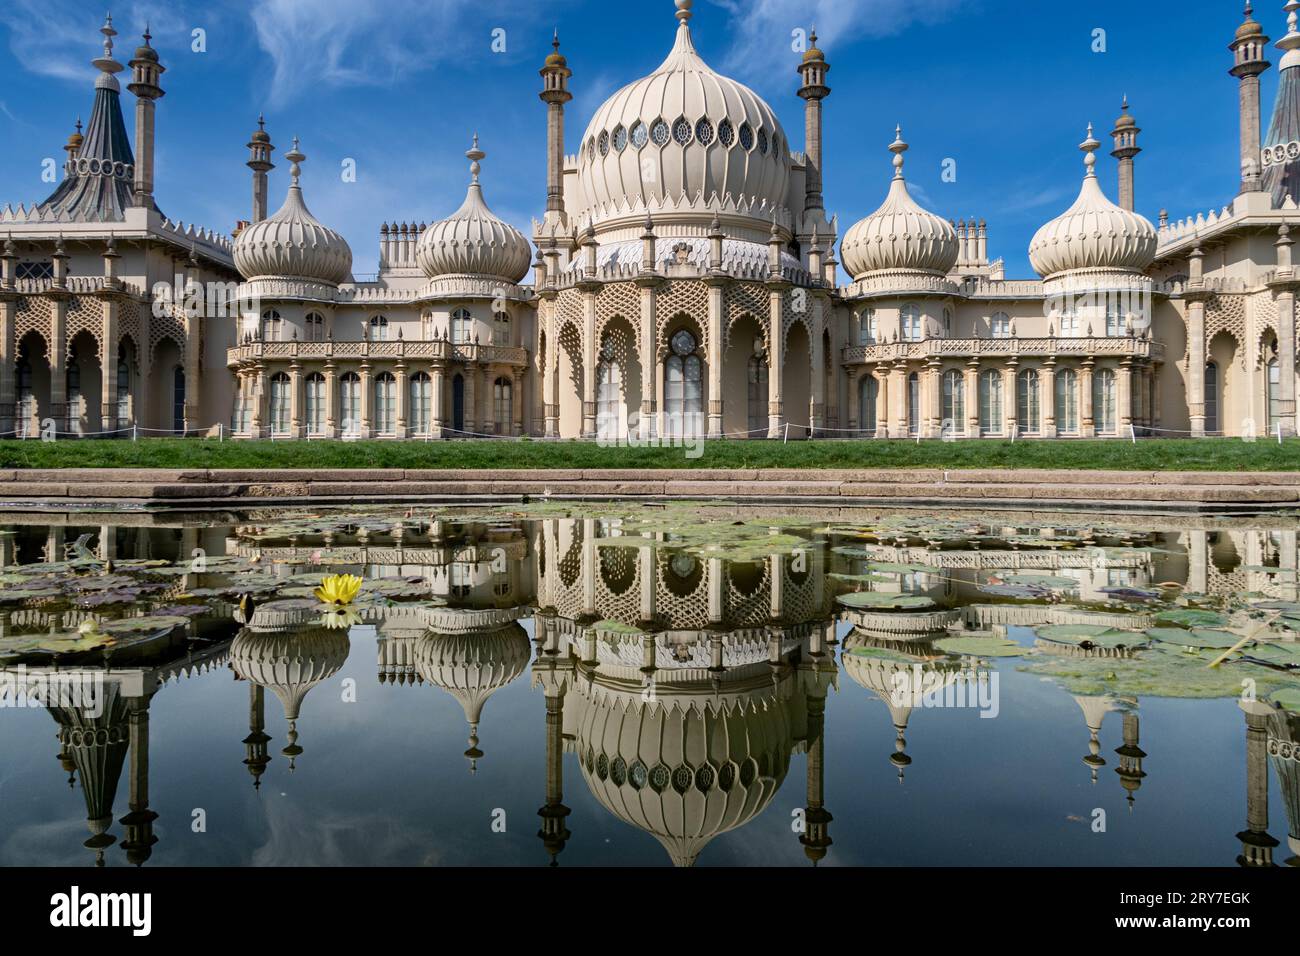 Reflexion des Brighton Royal Pavillons in ruhigem Wasser mit seiner architektonischen Pracht und seinem historischen Charme. Stockfoto